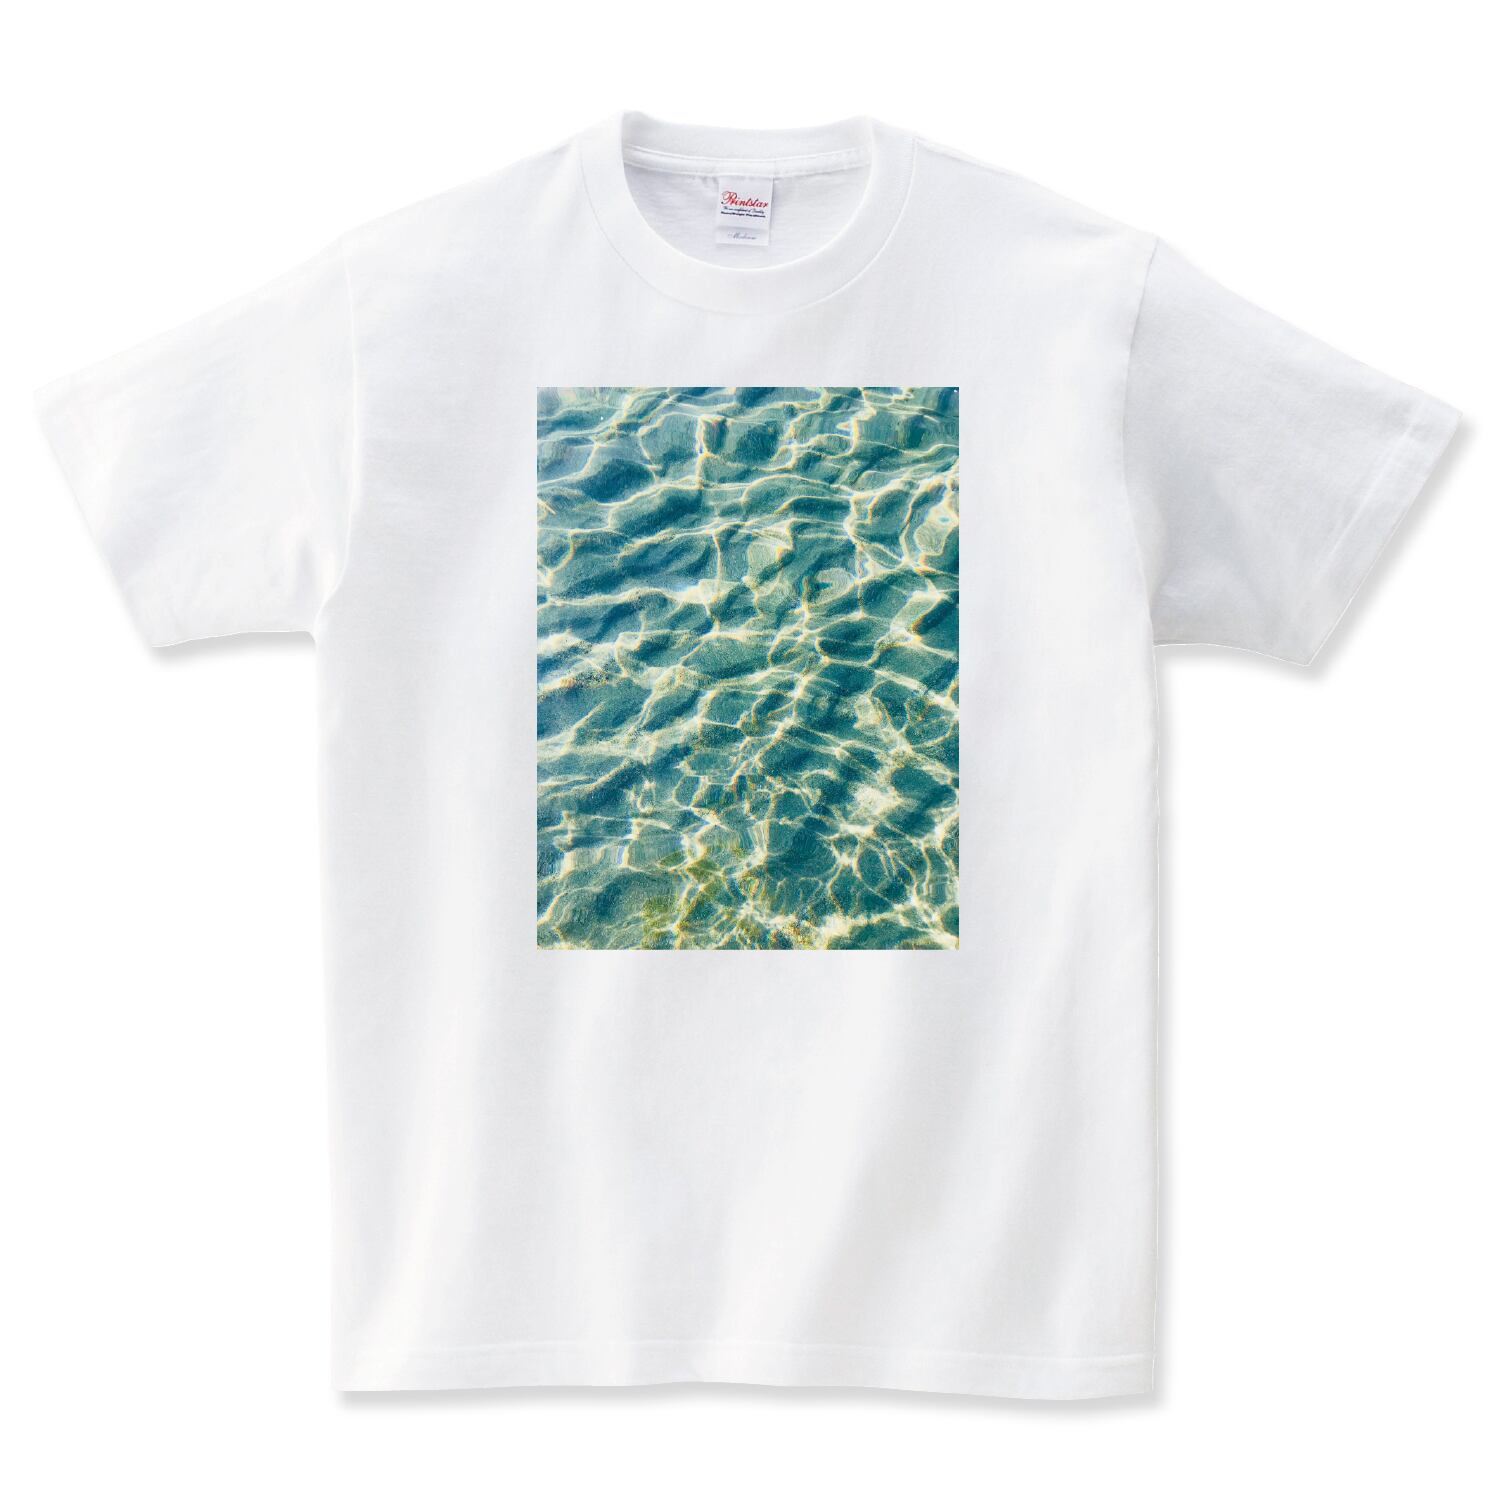 波紋 波 海 フォト Tシャツ メンズ レディース キッズ 子供服 半袖 大きいサイズ プレゼント ギフト